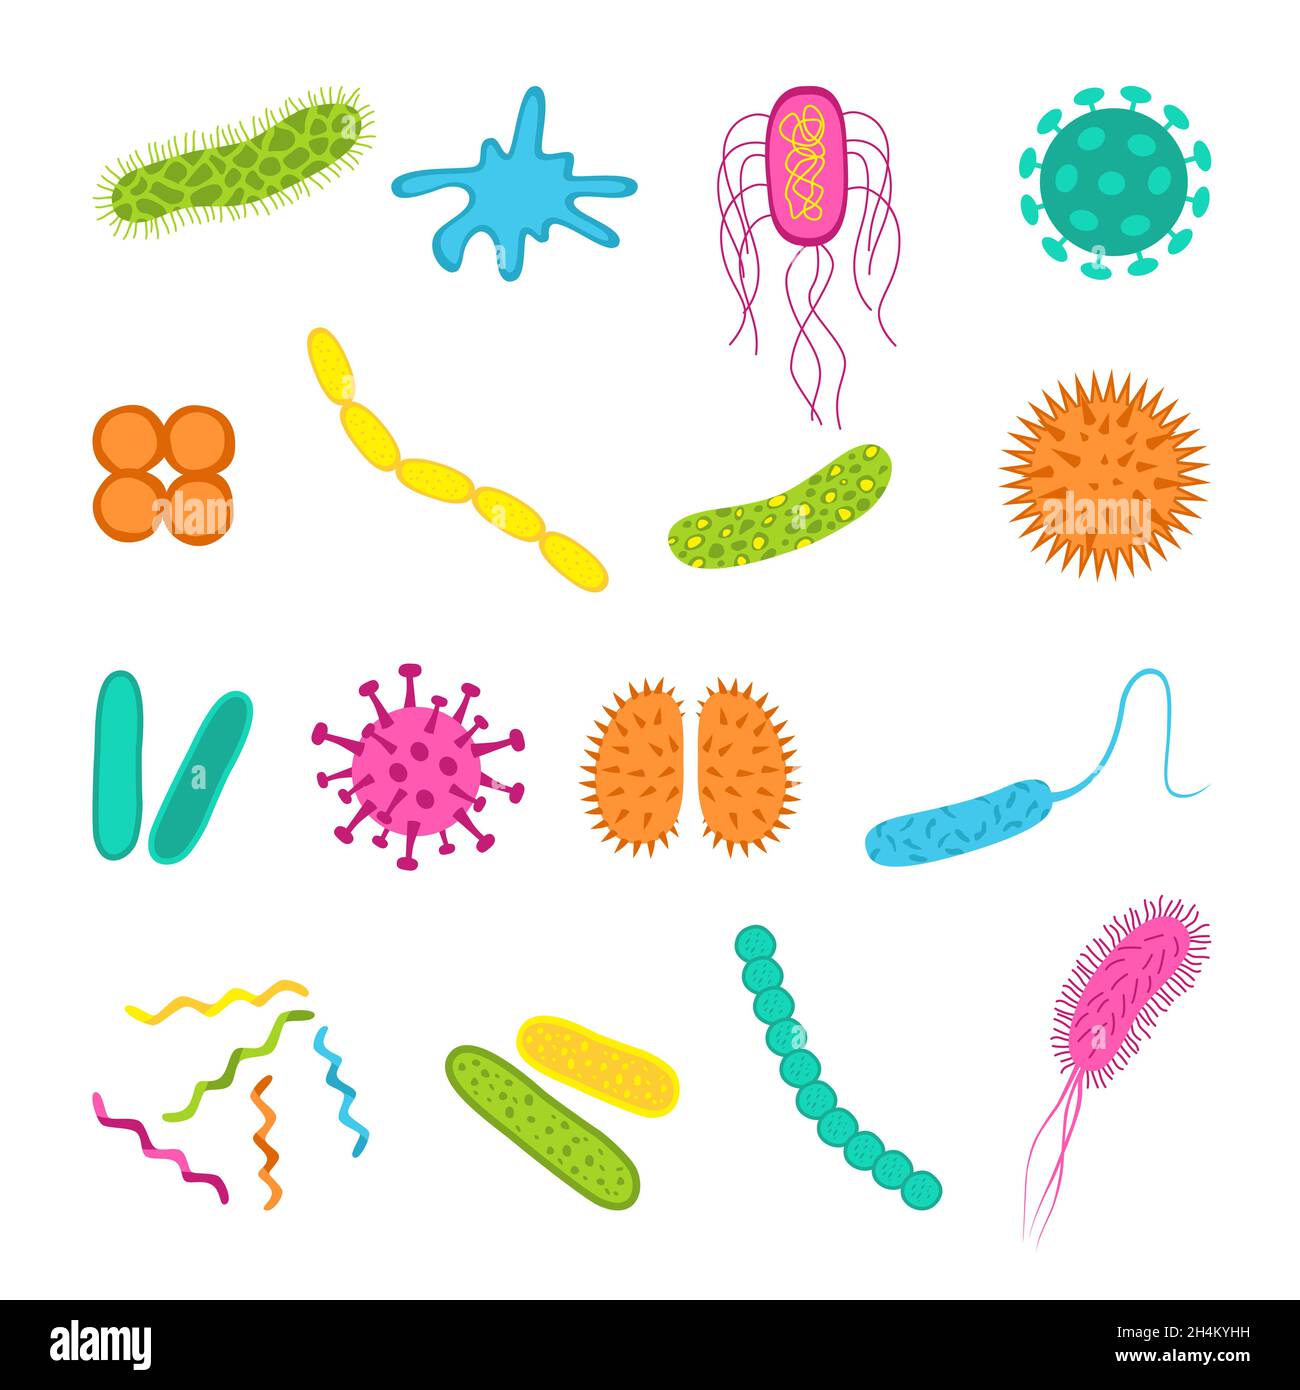 Symbole für Keime und Bakterien werden isoliert auf weißem Hintergrund gesetzt. Form der Bakterienzelle: cocci, Bazillen, Spirilla. Vektorgrafik im flachen Stil. Stock Vektor